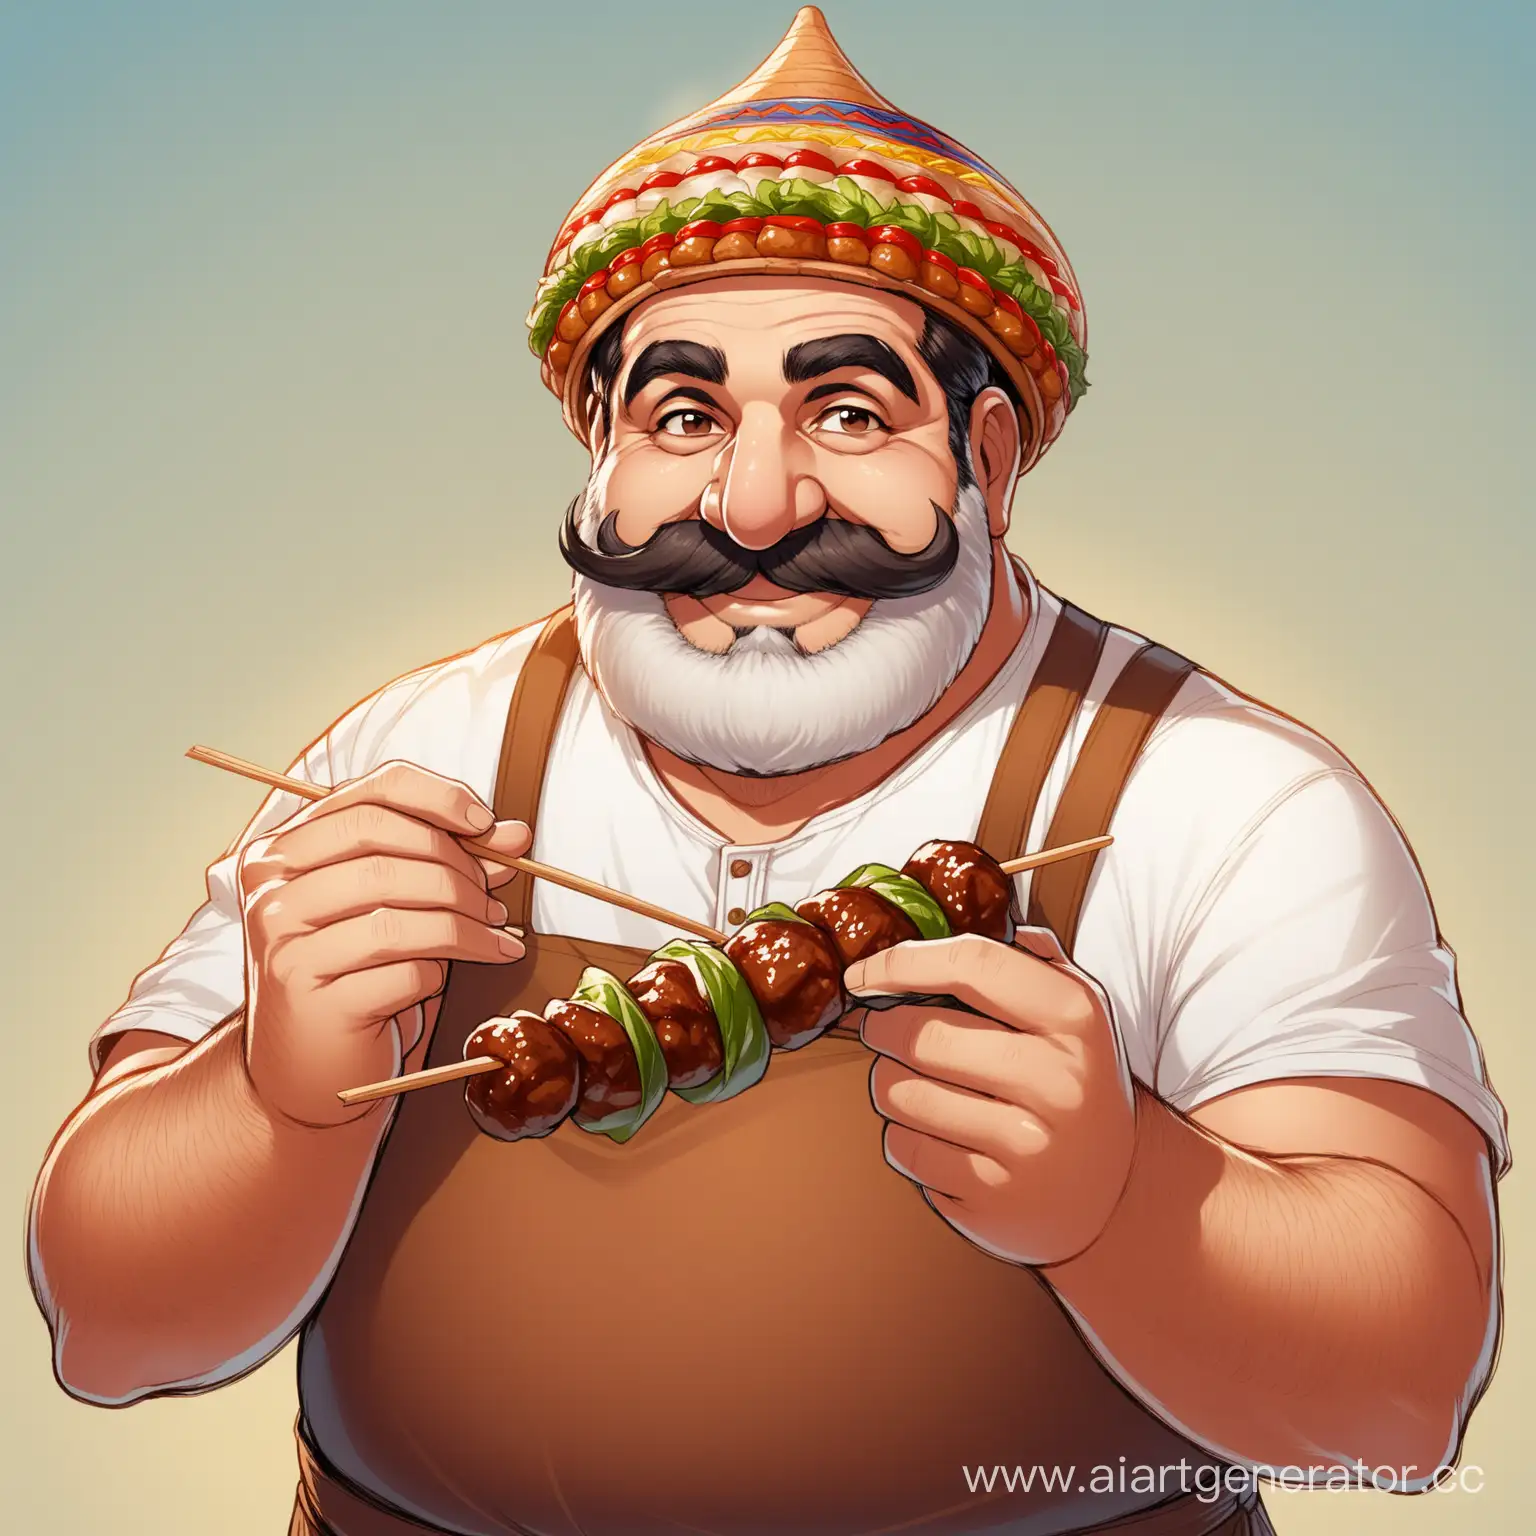 Большой  армянин с большим носом, с густым усами широко улыбается, держит в руках шашлык на шампуре. На голове у него папаха. 